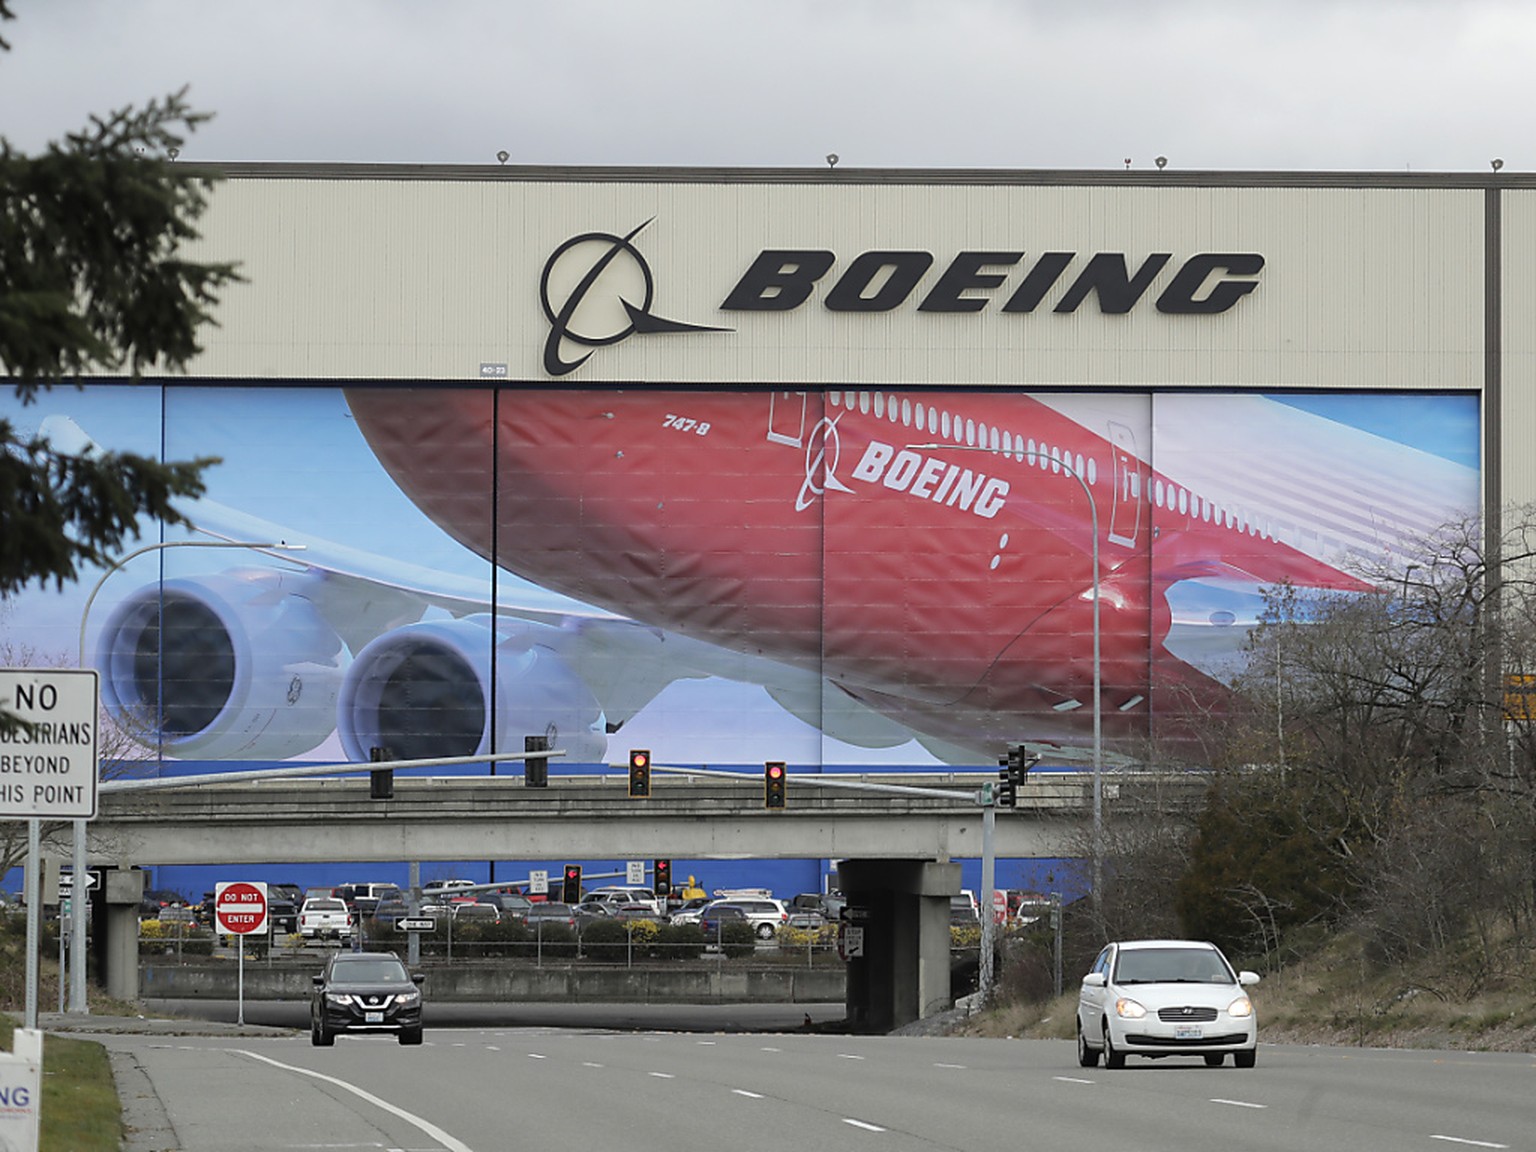 Fabrik des US-Flugzeugherstellers Boeing in Everett nördlich von Seattle. (Archivbild)